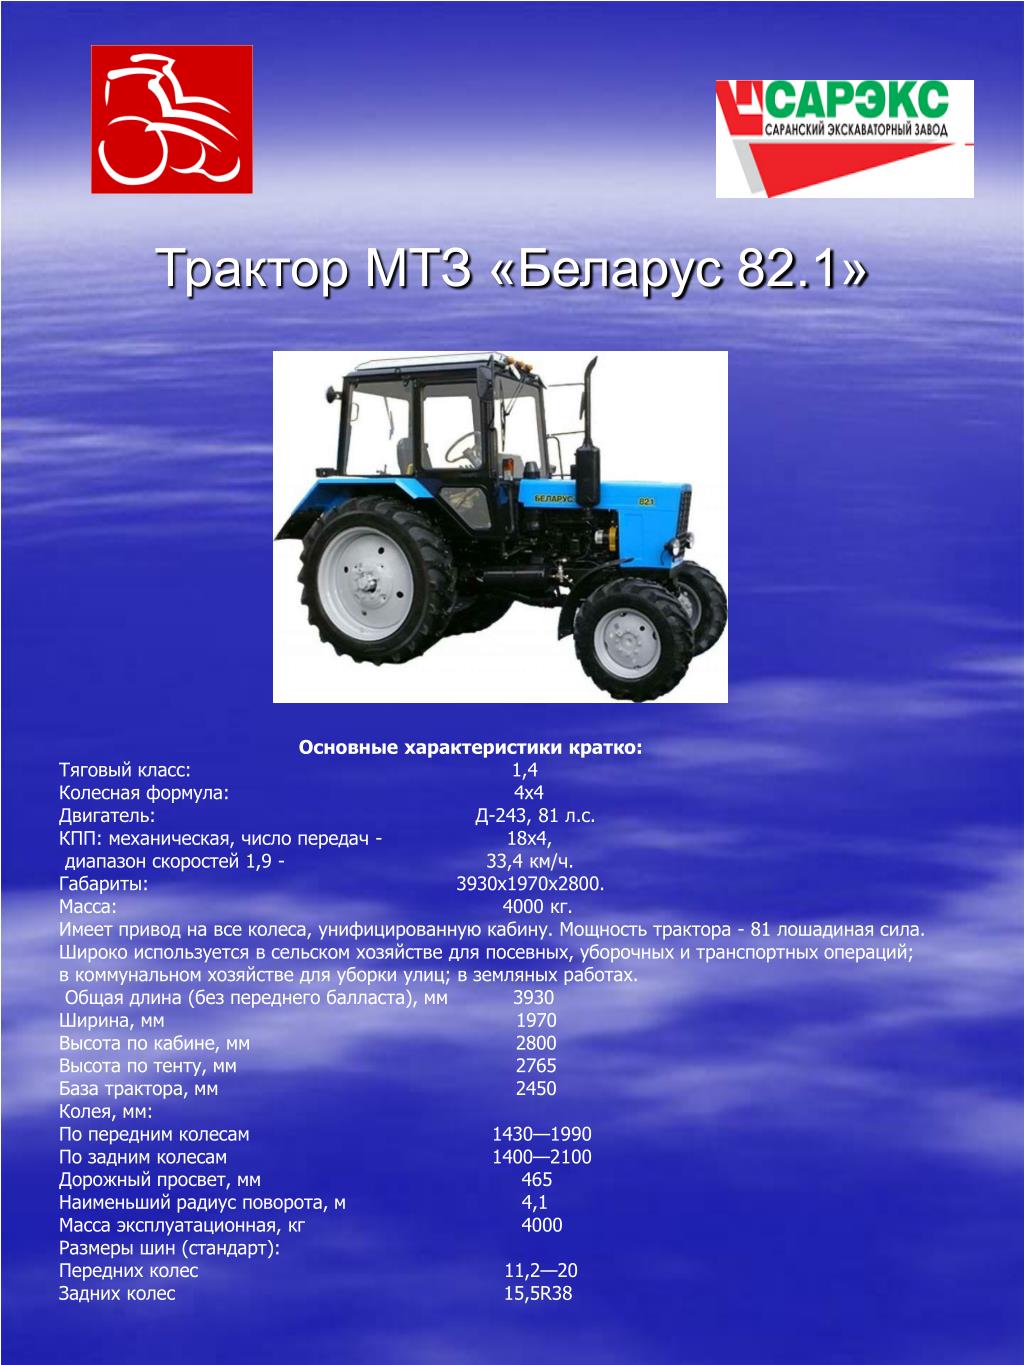 Двигатель мтз характеристики. Вес трактора Беларусь МТЗ 80. Масса трактора МТЗ 82. МТЗ-82 трактор вес МТЗ 82. МТЗ-80 трактор характеристики технические колесный.